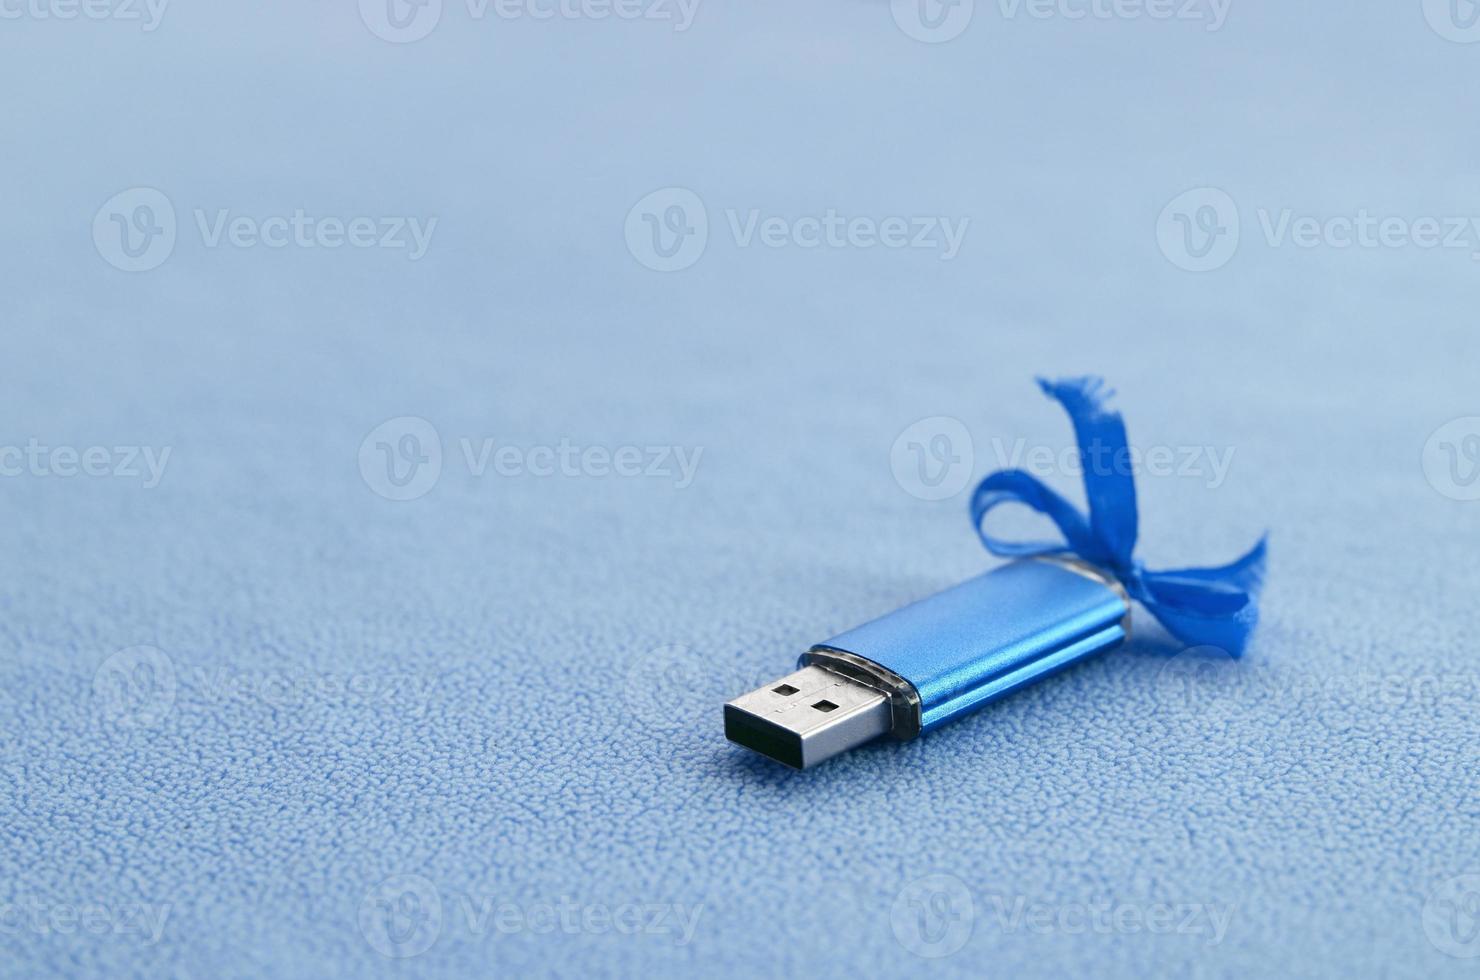 la tarjeta de memoria flash usb azul brillante con un lazo azul se encuentra sobre una manta de tela de vellón azul claro suave y peluda. diseño clásico de regalo femenino para una tarjeta de memoria foto